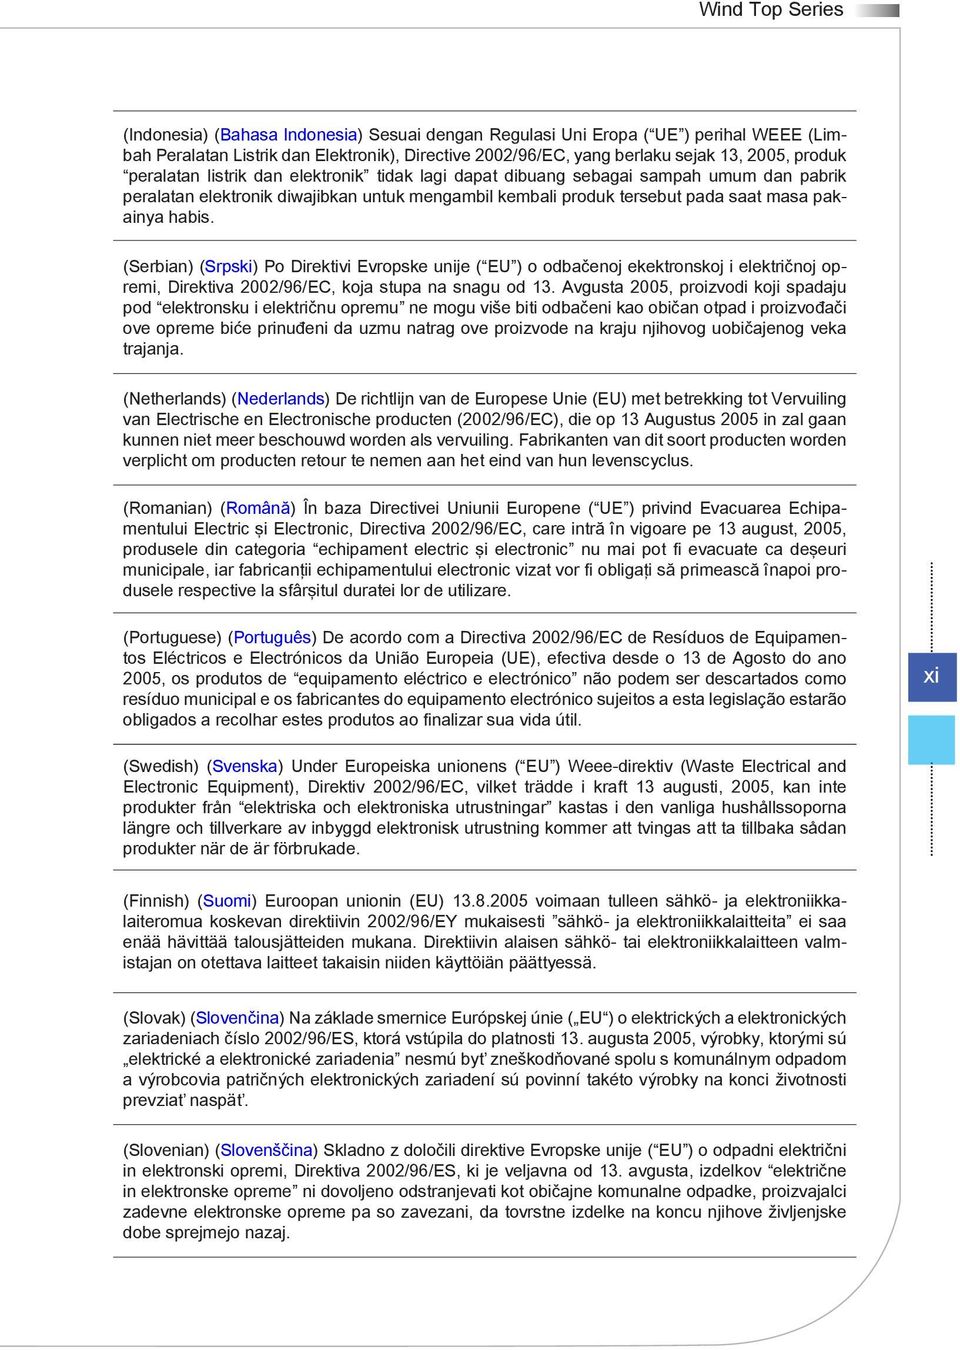 (Serbian) (Srpski) Po Direktivi Evropske unije ( EU ) o odbačenoj ekektronskoj i električnoj opremi, Direktiva 2002/96/EC, koja stupa na snagu od 13.